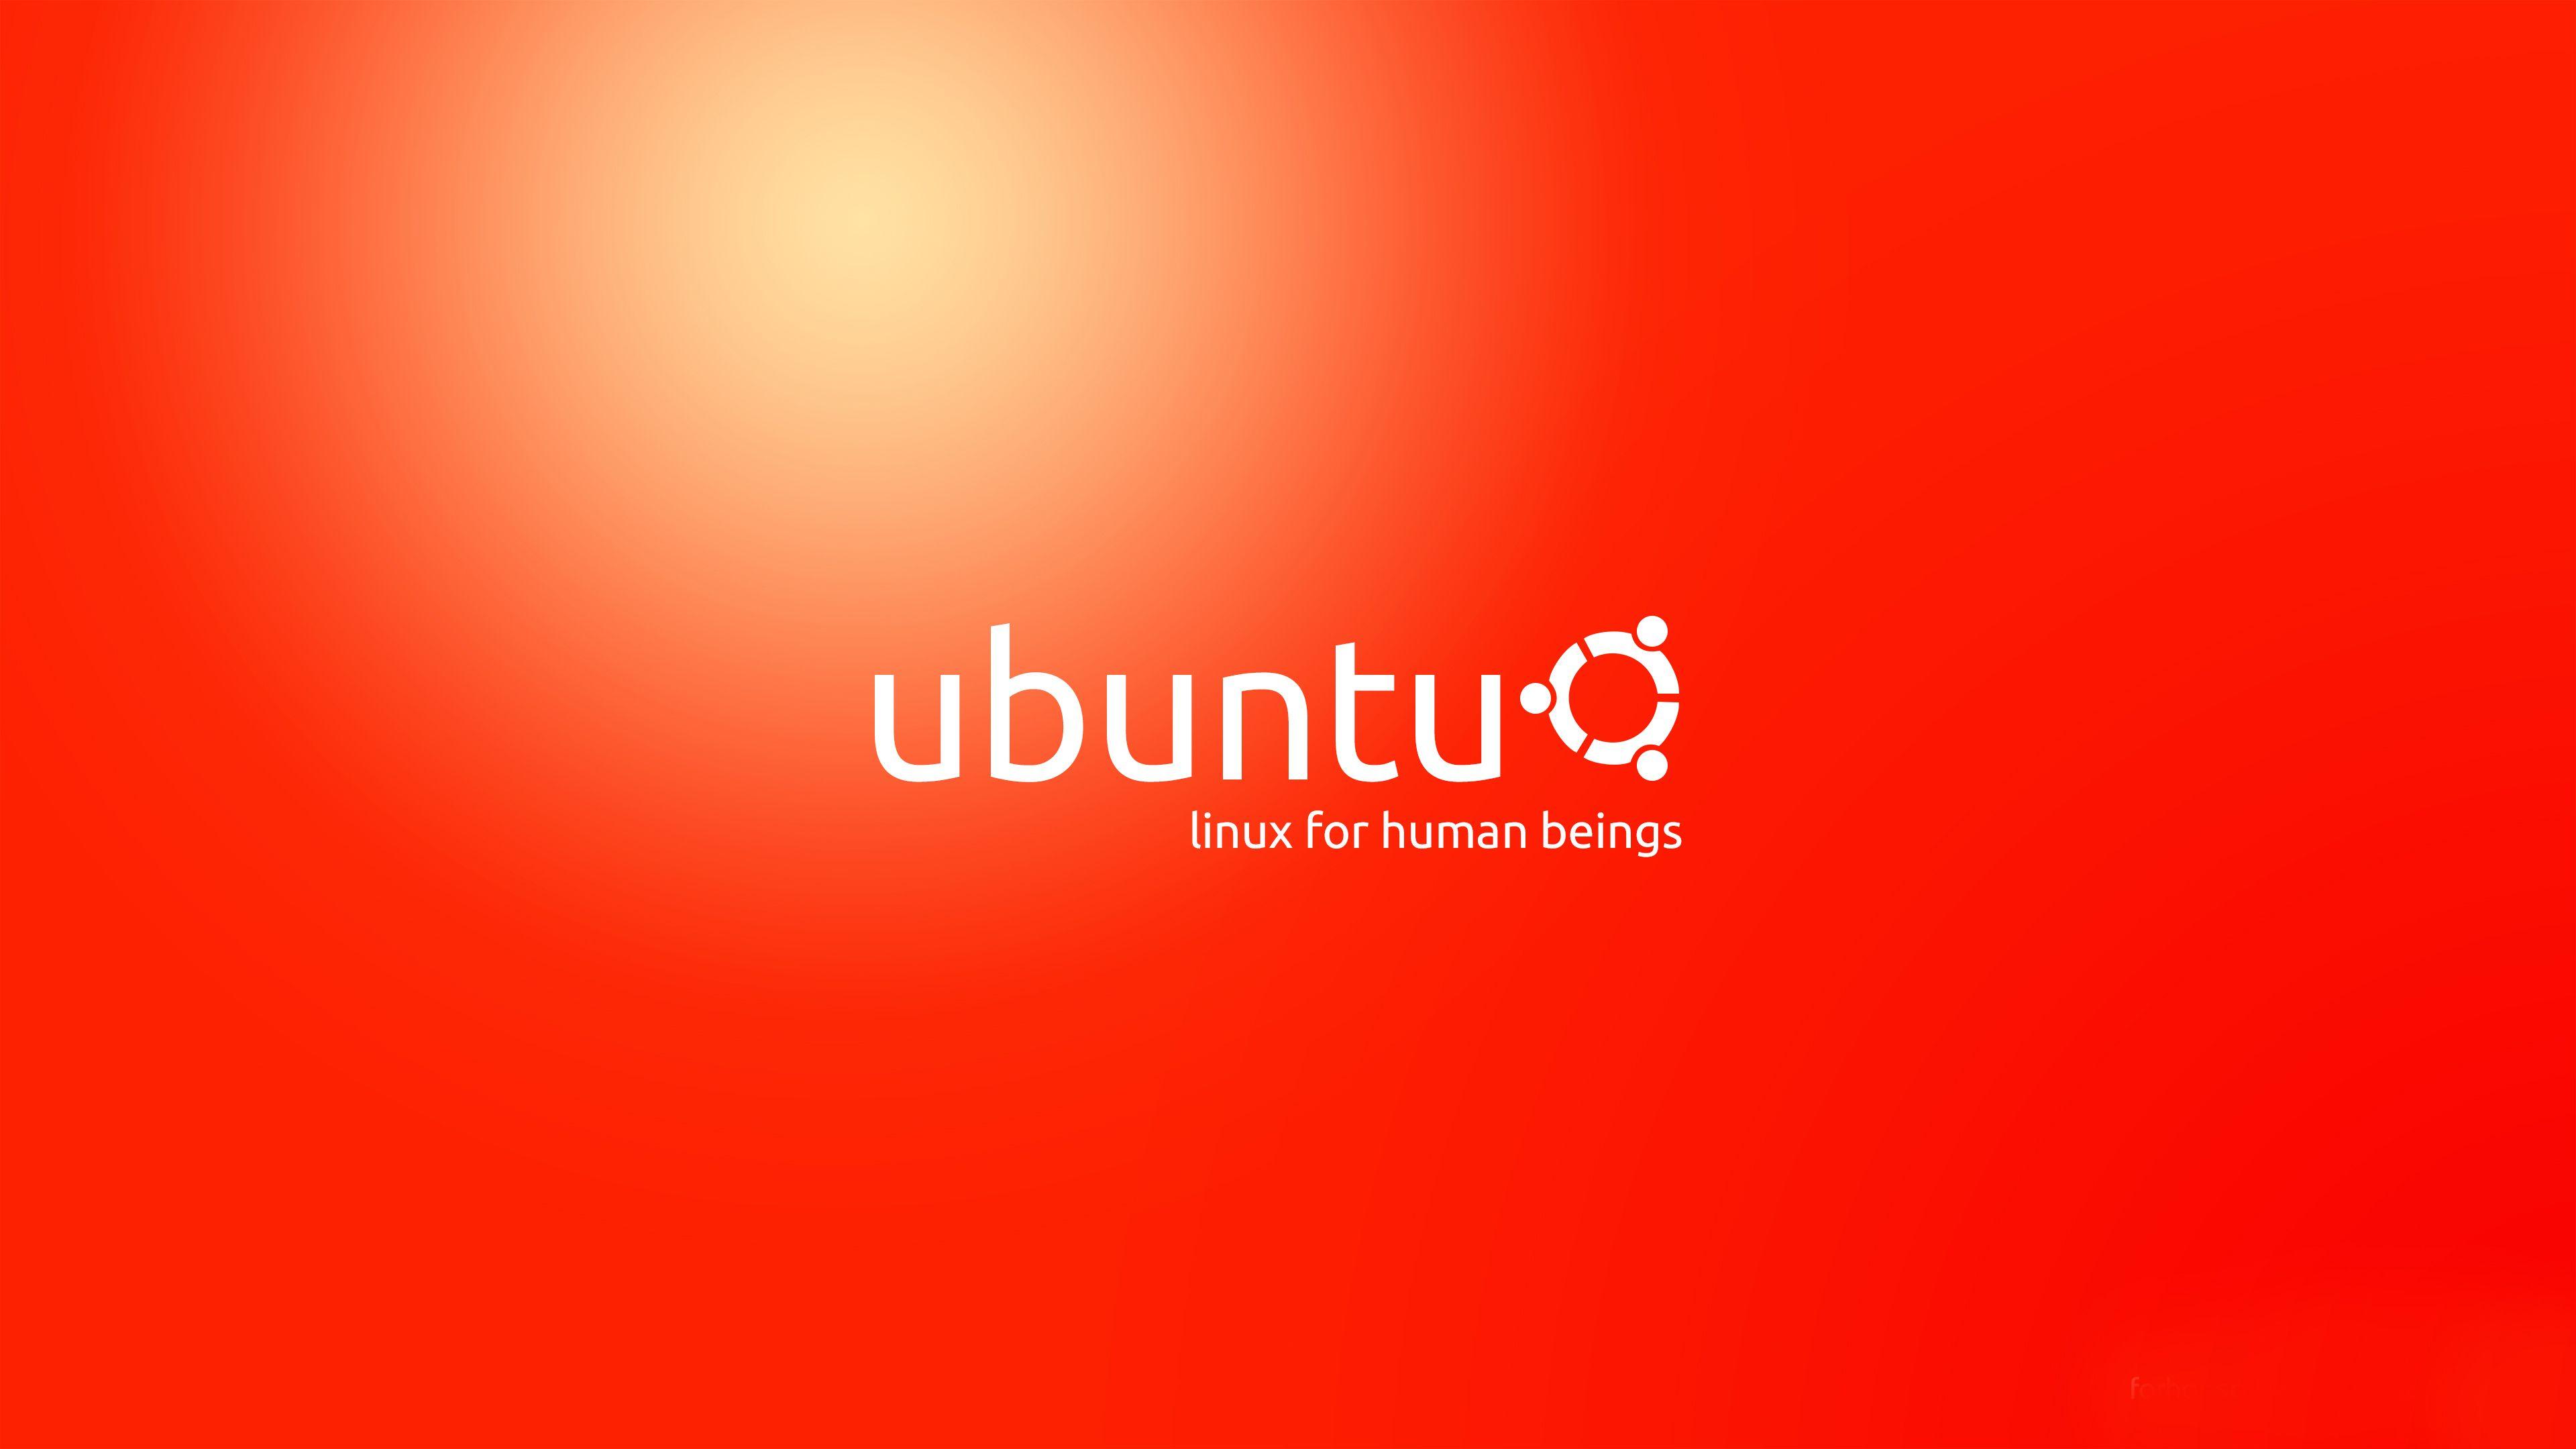 Sống động hơn với hình nền Ubuntu 4K! Với độ phân giải 4K tuyệt đẹp, hình nền Ubuntu sẽ làm cho màn hình laptop của bạn trở nên sống động hơn bao giờ hết. Với phong cách thiết kế đẳng cấp và tinh tế, bạn sẽ tìm thấy những gợi ý hình nền Ubuntu 4K đẹp mắt trong bài viết của chúng tôi. Hãy trao đổi cùng những người đam mê Ubuntu để tìm kiếm những hình nền độc đáo và sáng tạo nhất.